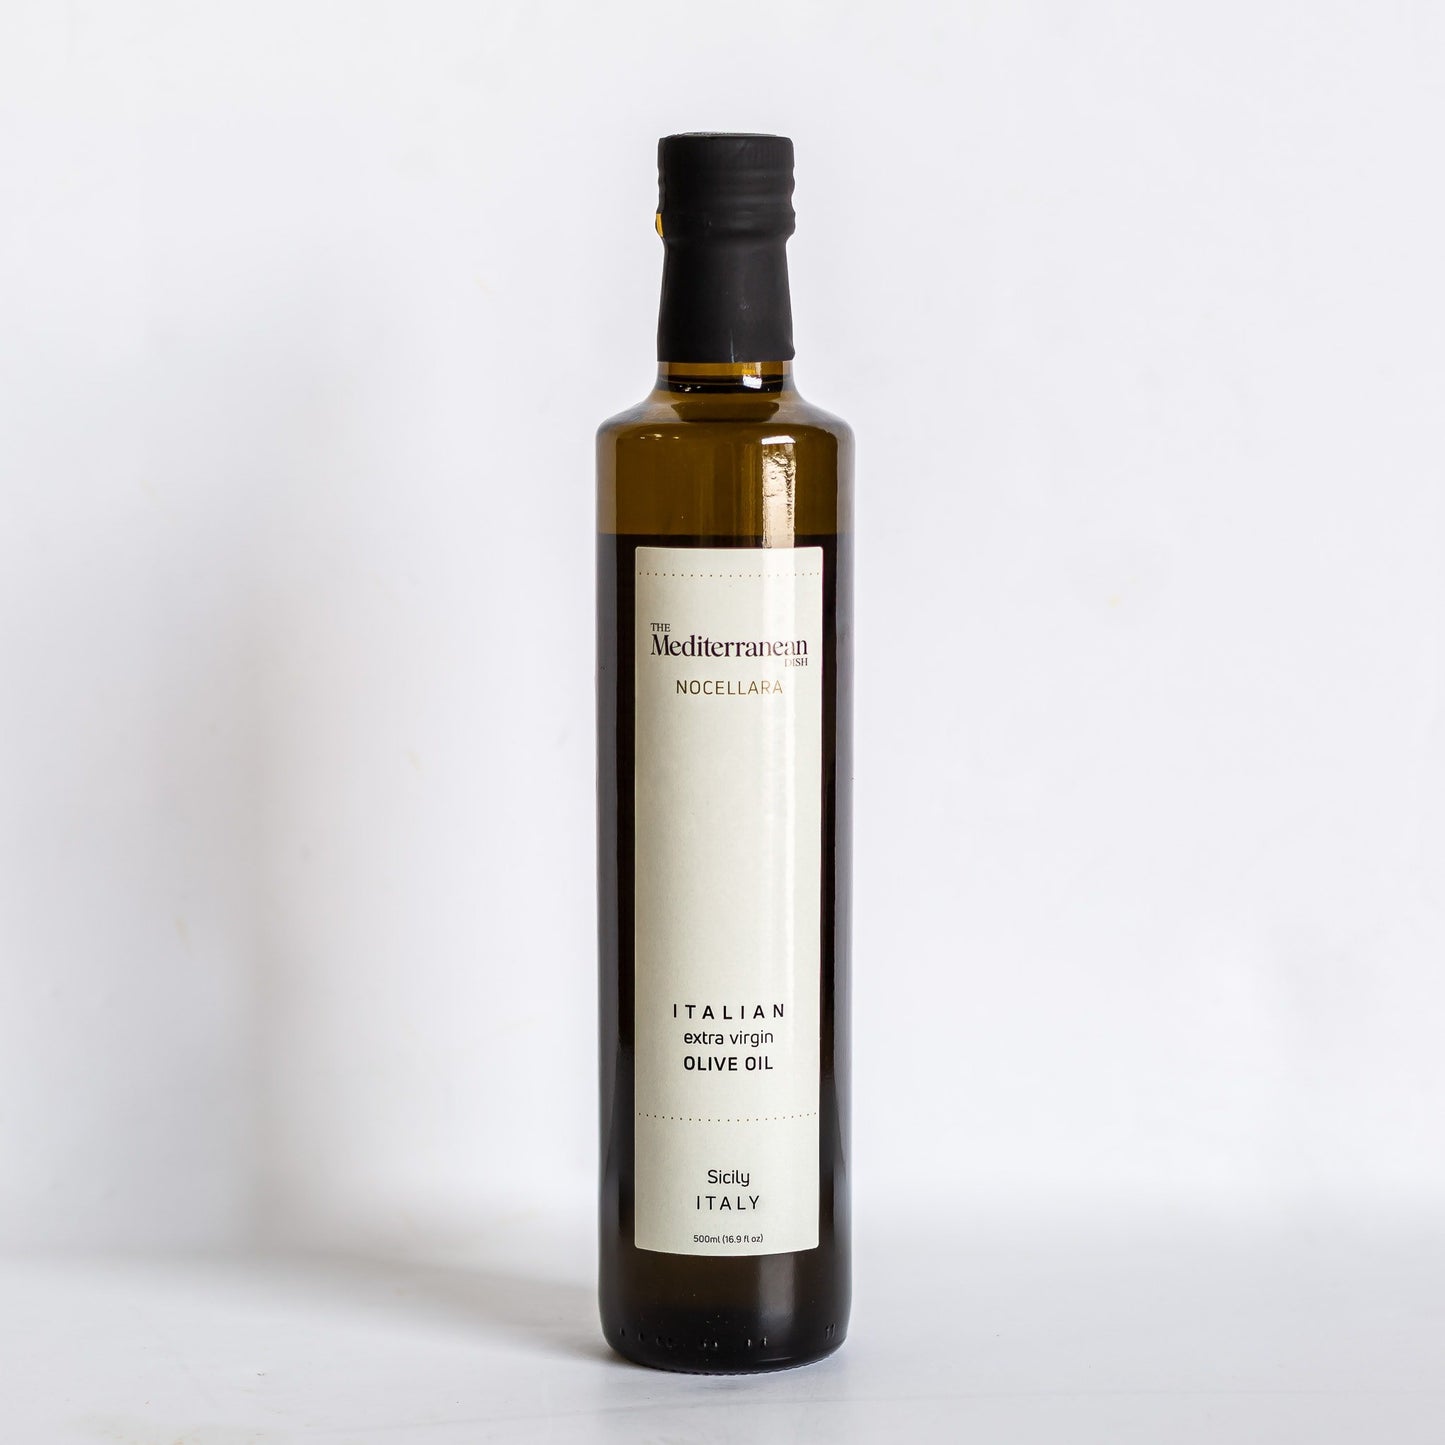 A bottle of nocellara olive oil